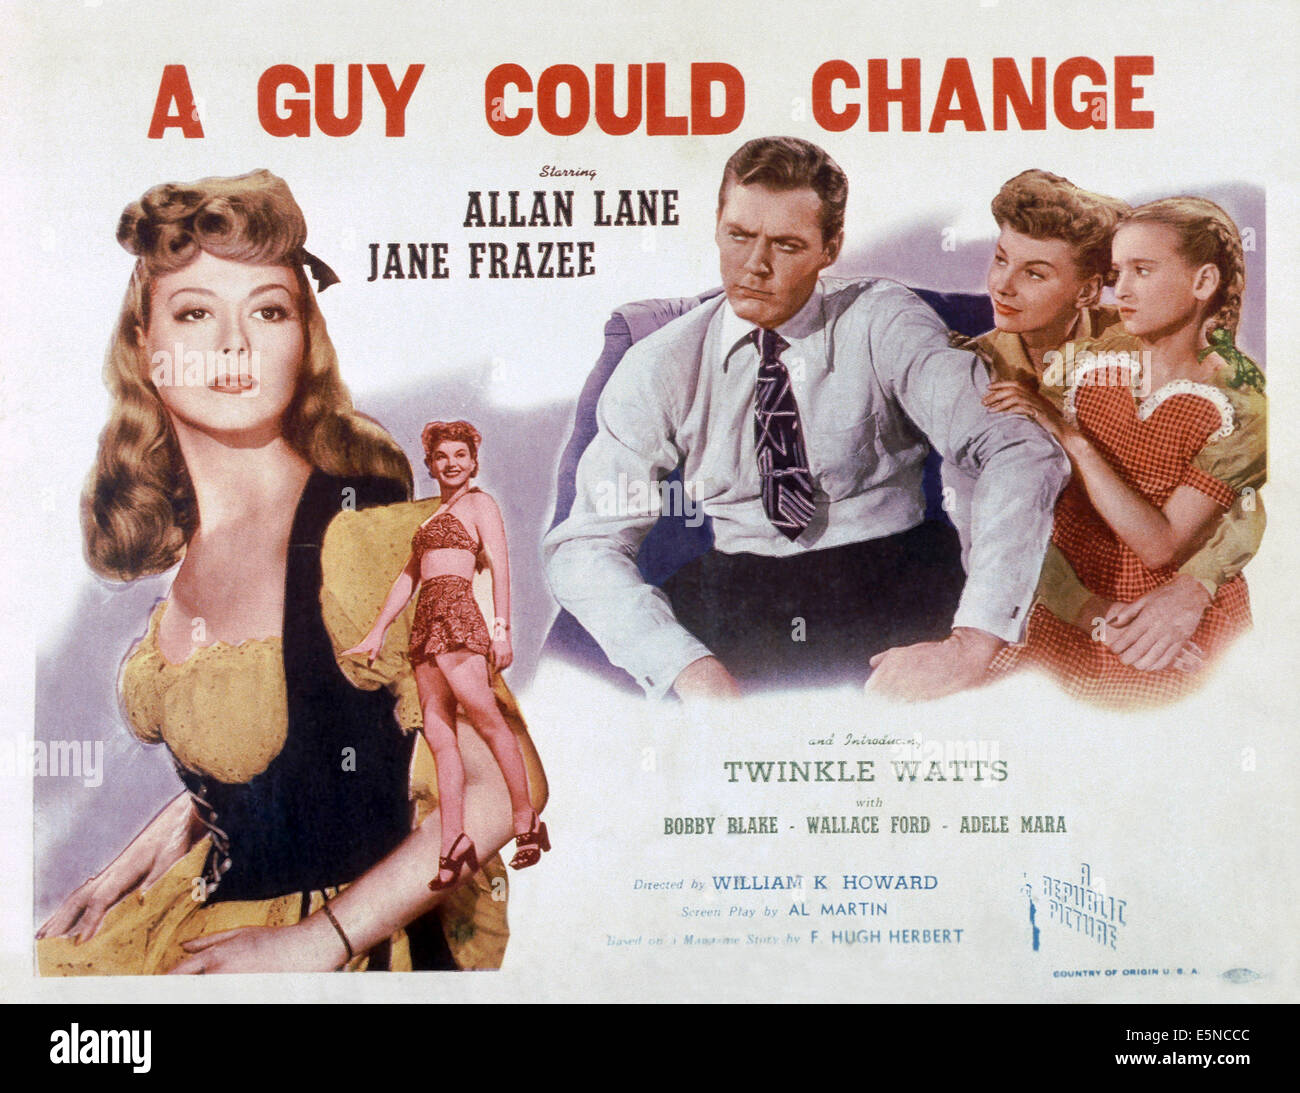 Ein Mann könnte sich ändern, Allan Lane, Jane Frazee, Twinkle Watts, 1946 Stockfoto